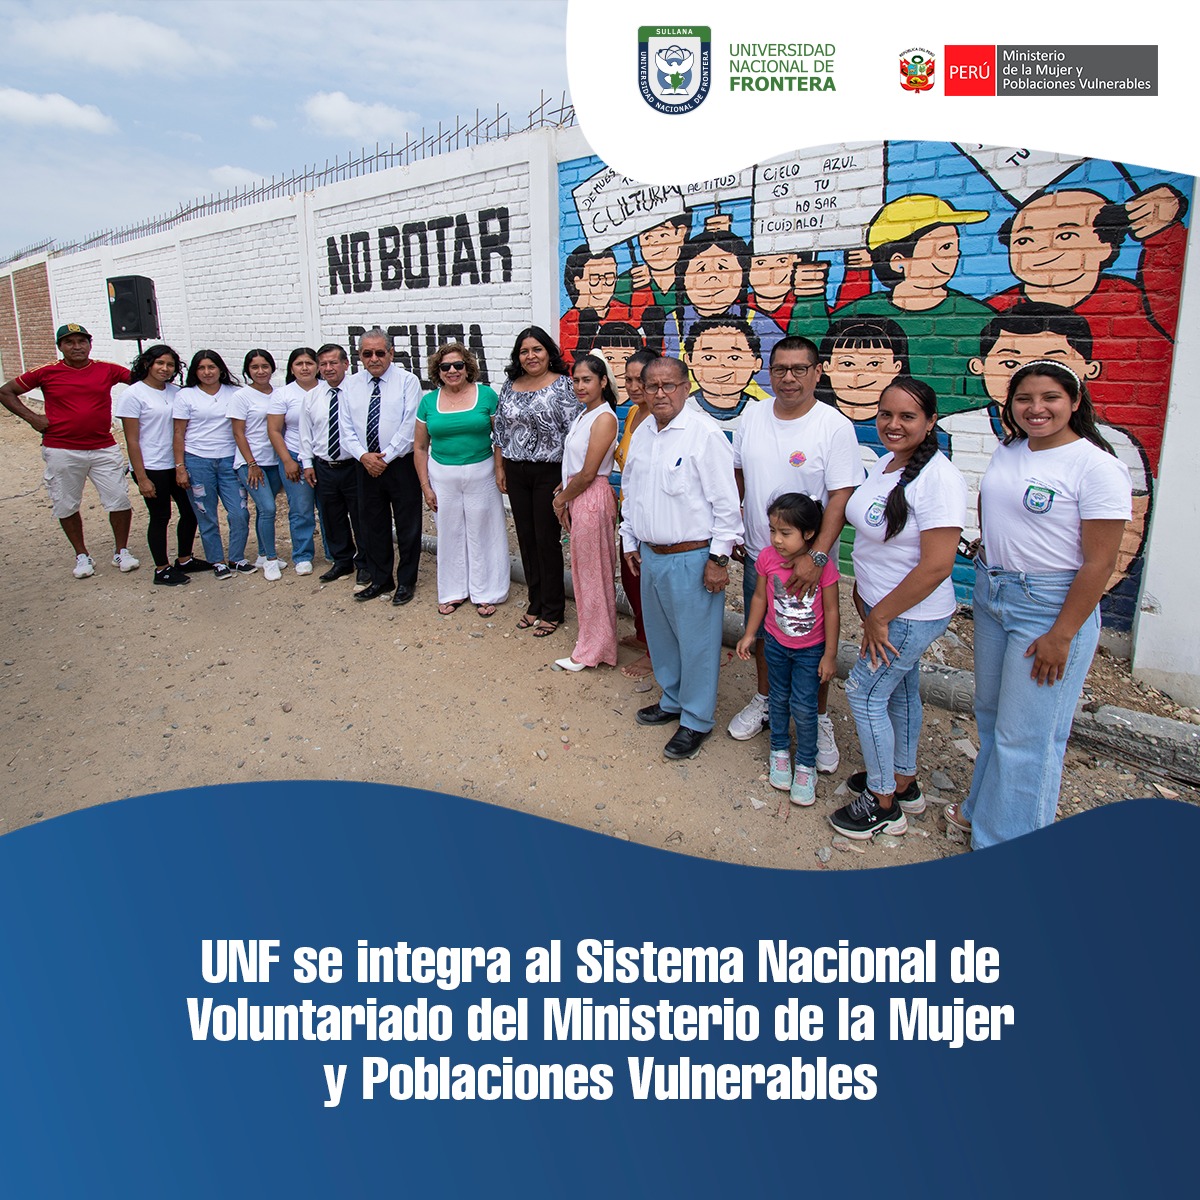 UNF se integra al Sistema Nacional de Voluntariado del Ministerio de la Mujer y Poblaciones Vulnerables